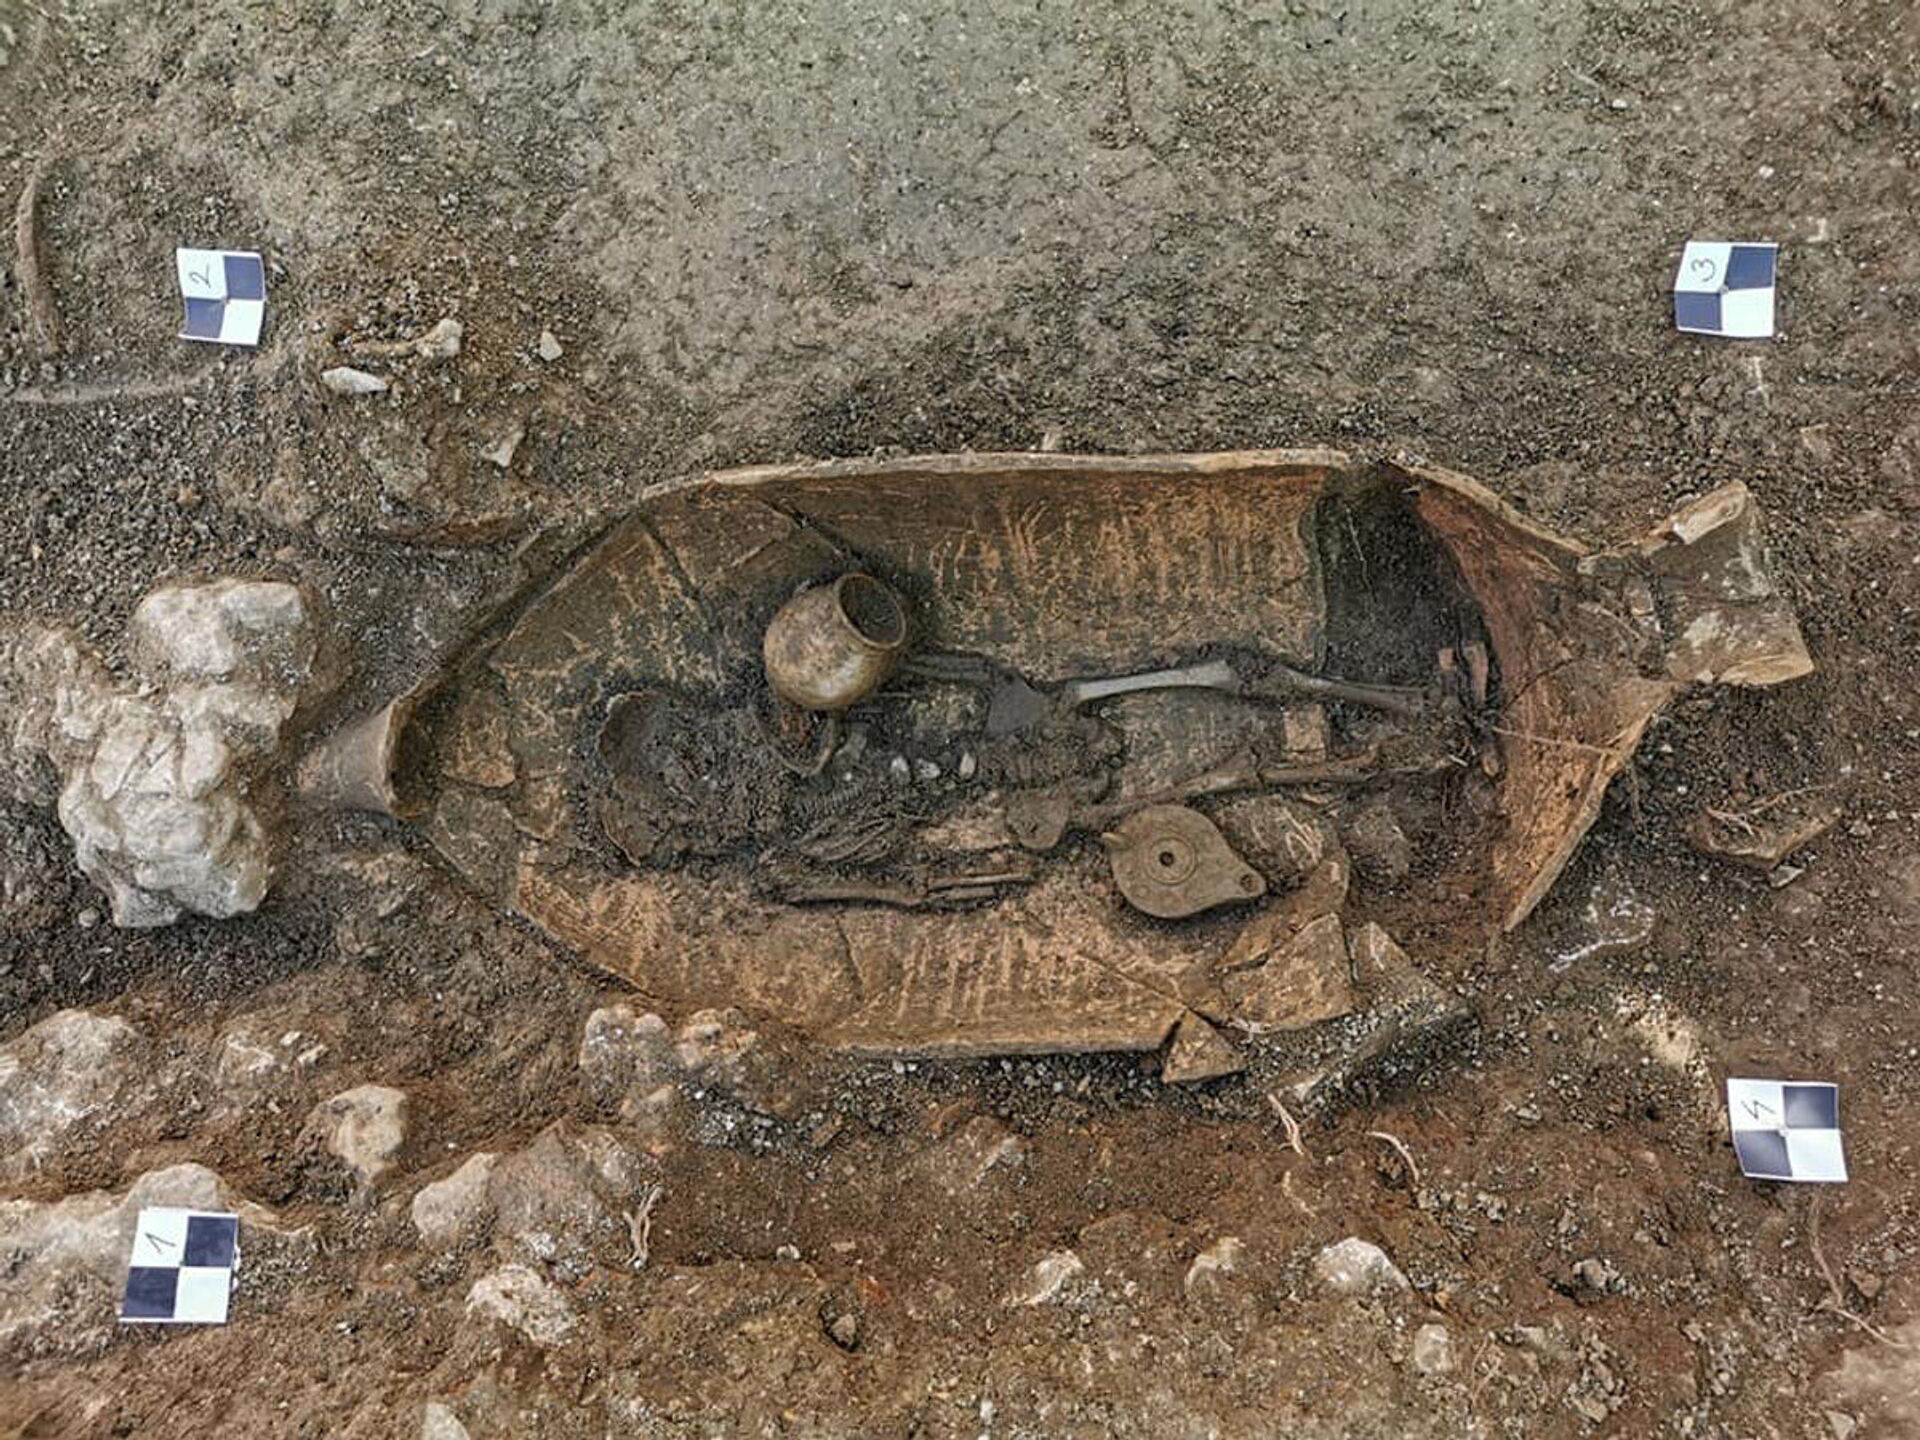 Corpos sepultados em jarros são descobertos em jardim de antigo palácio na Croácia (FOTOS) - Sputnik Brasil, 1920, 22.06.2021